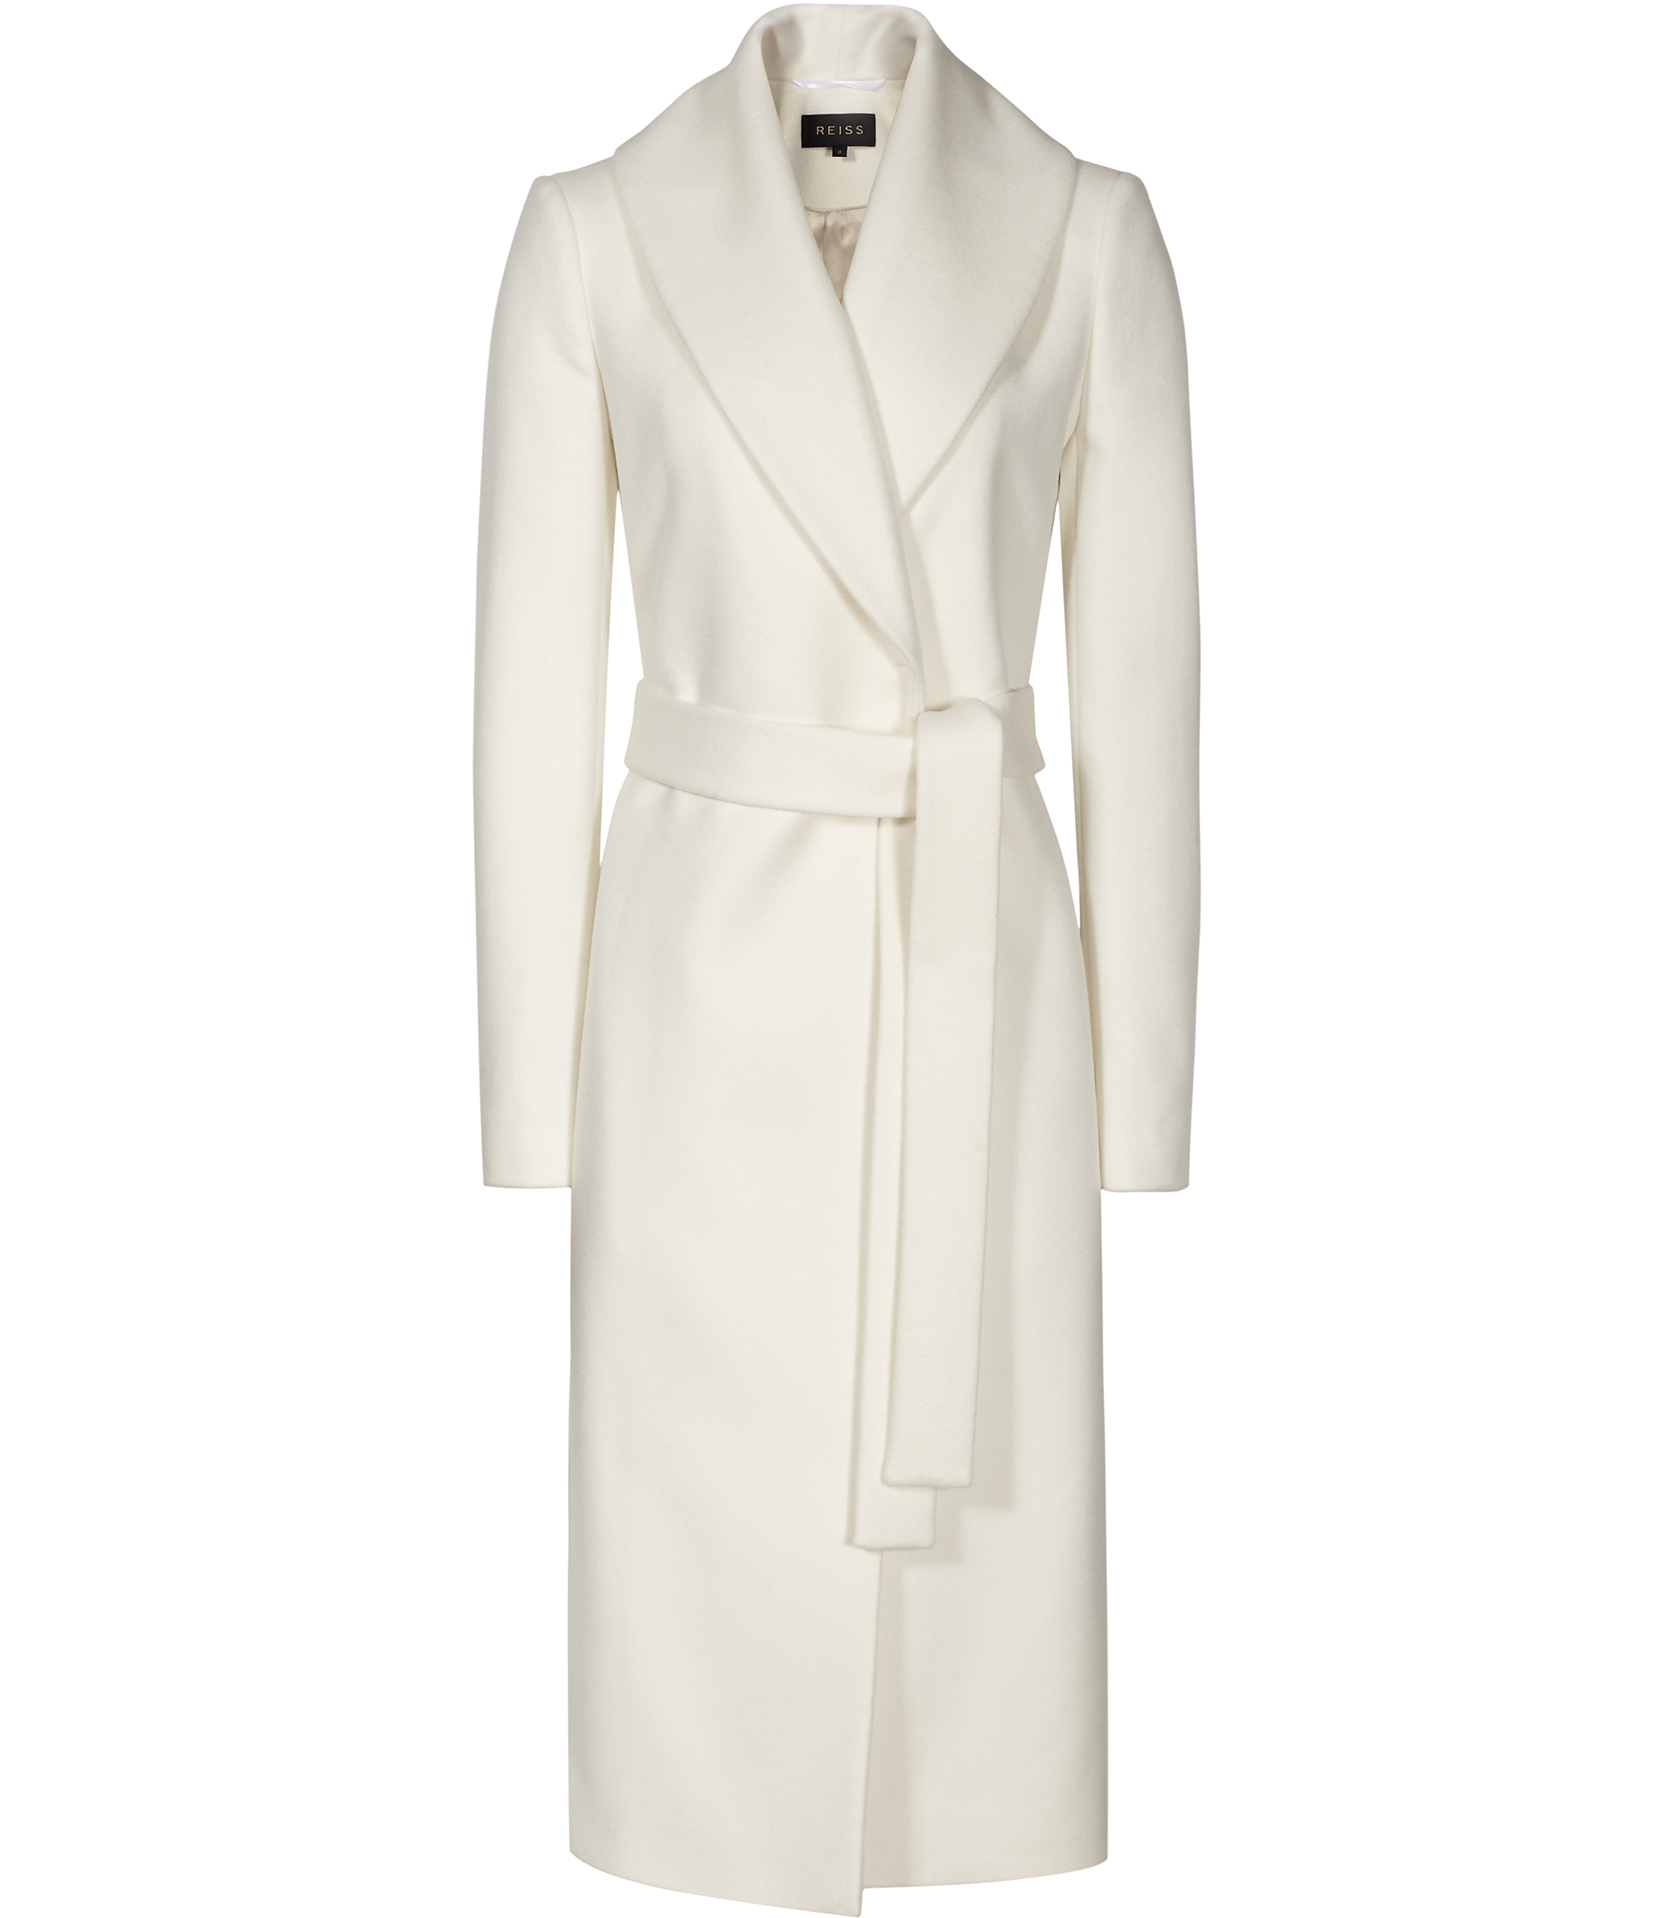 Lyst - Reiss Enna Longline Wrap Coat in White